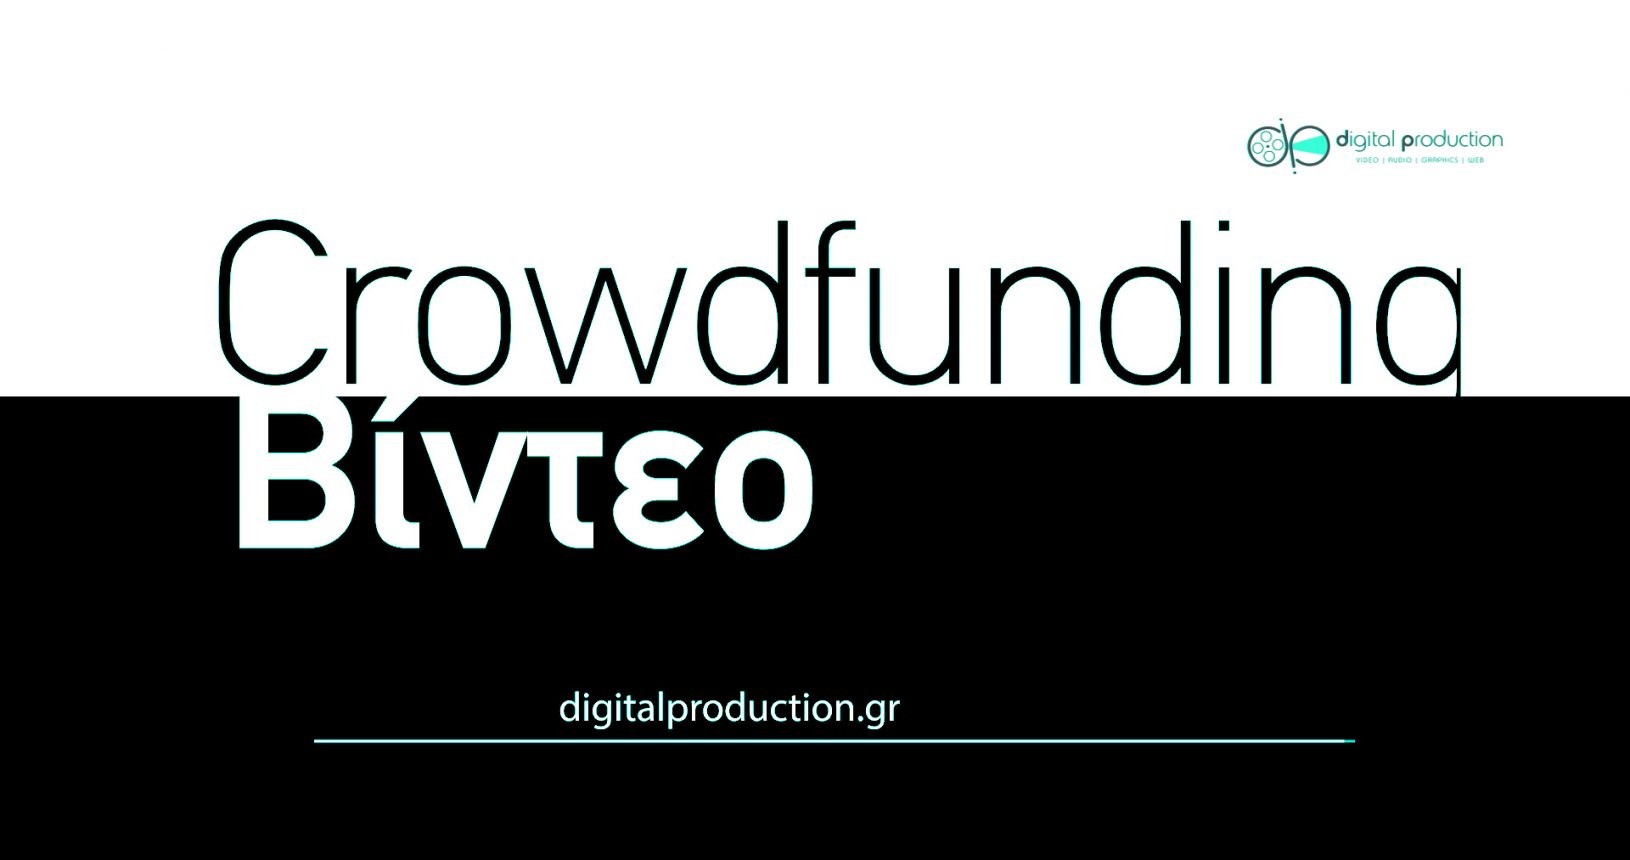 Δημιουργία προωθητικού Crowdfunding βίντεο (Kickstarter κλπ) | Digital Production